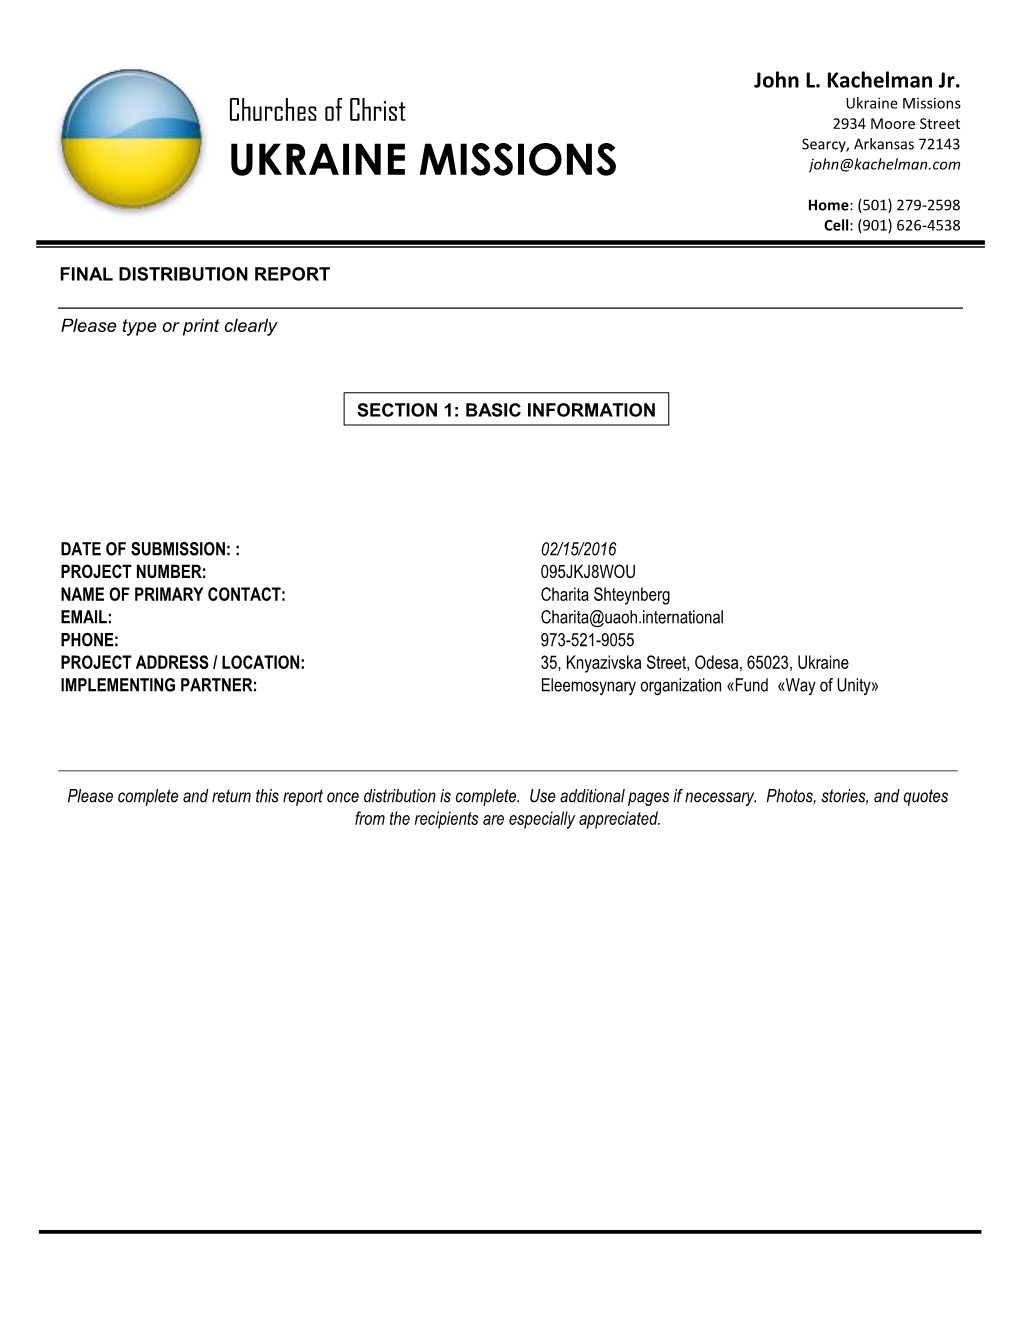 Ukraine Missions Church Es of Christ 2934 Moore Street Searcy, Arkansas 72143 UKRAINE MISSIONS John @Kachelman .Com